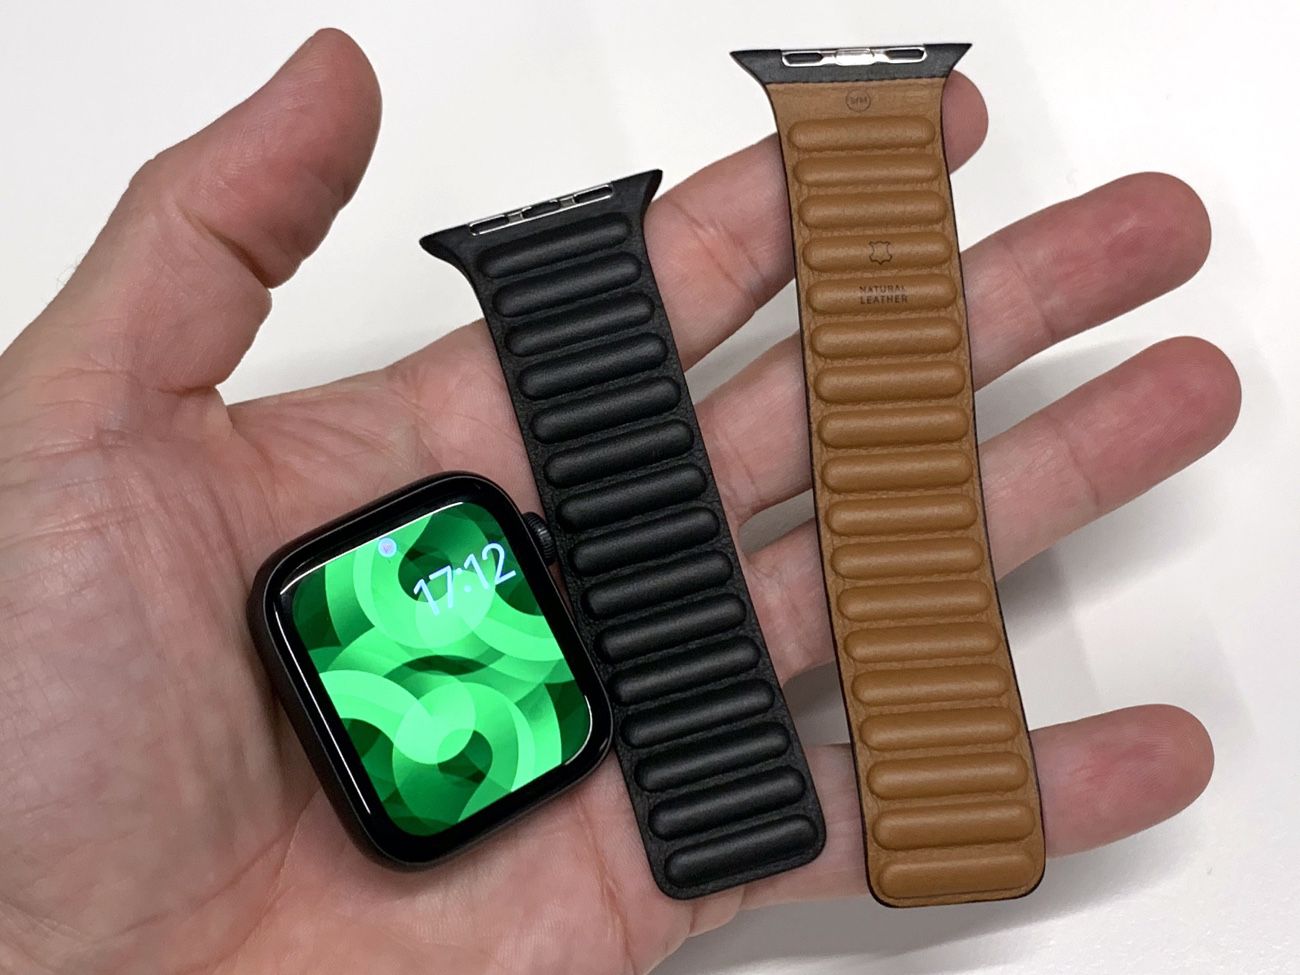 Les accessoires utiles pour votre nouvelle Apple Watch